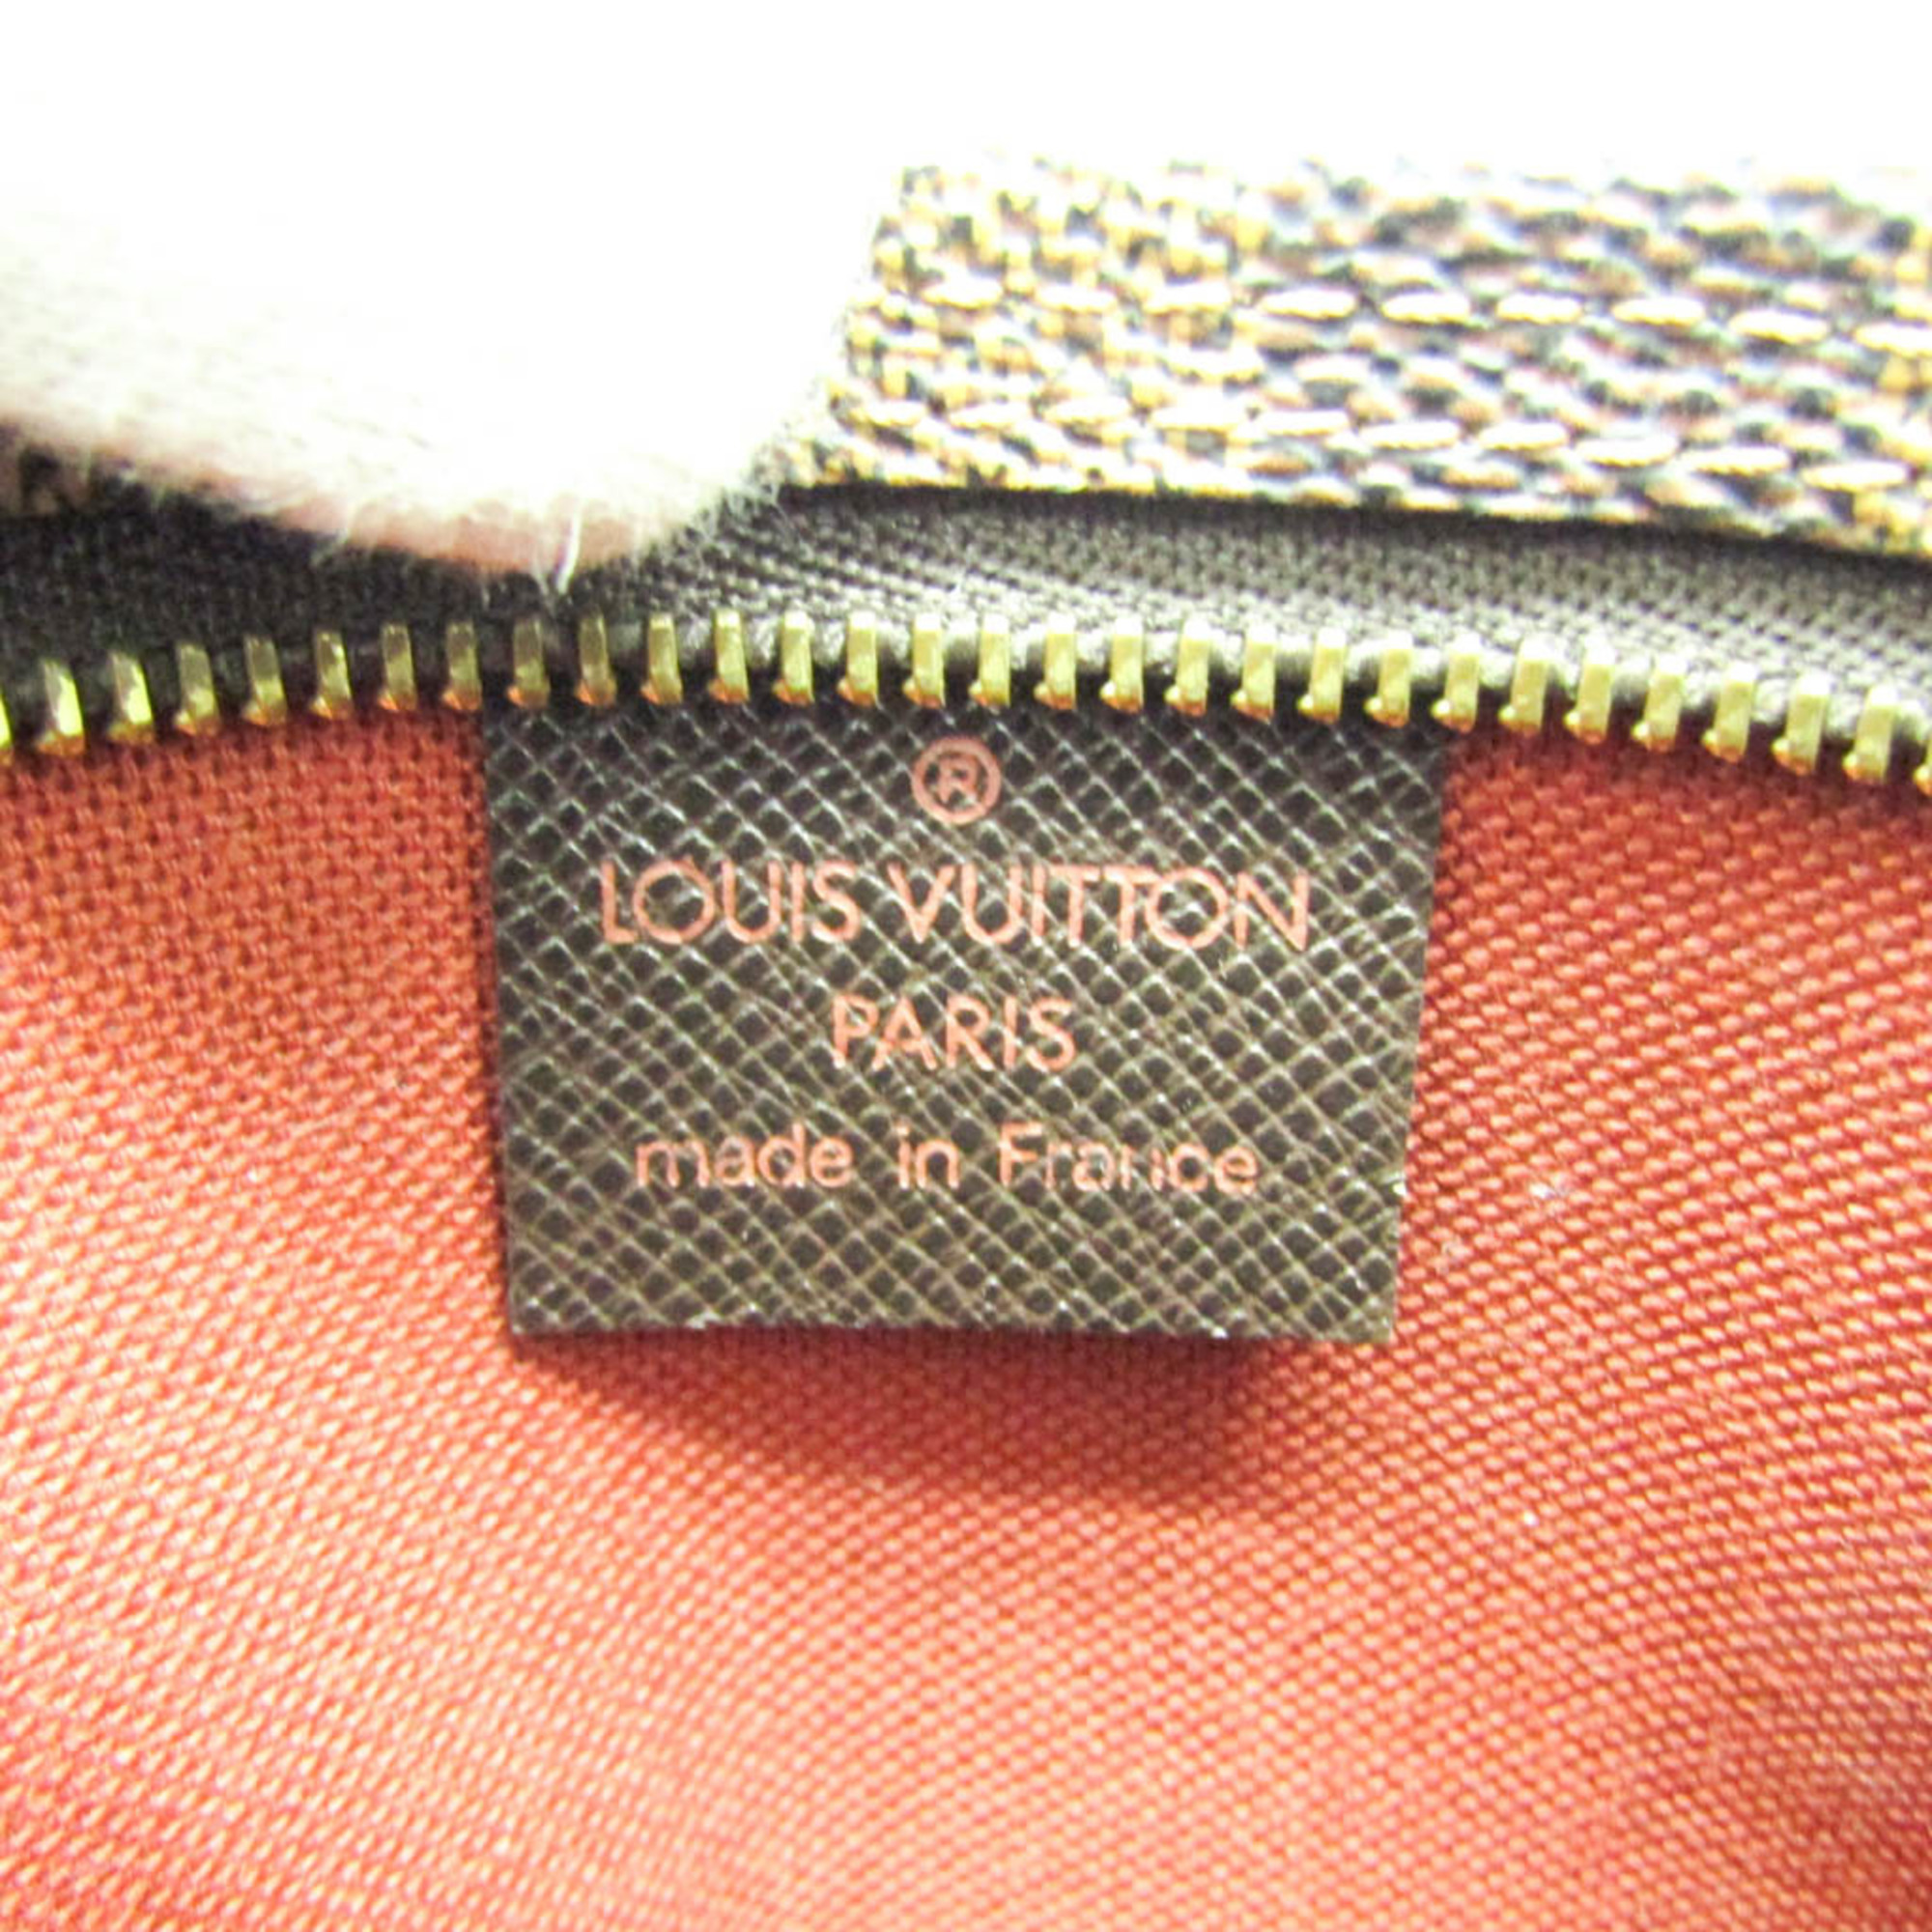 ルイ・ヴィトン(Louis Vuitton) ダミエ トゥルース・メイクアップ N51982 レディース ハンドバッグ エベヌ